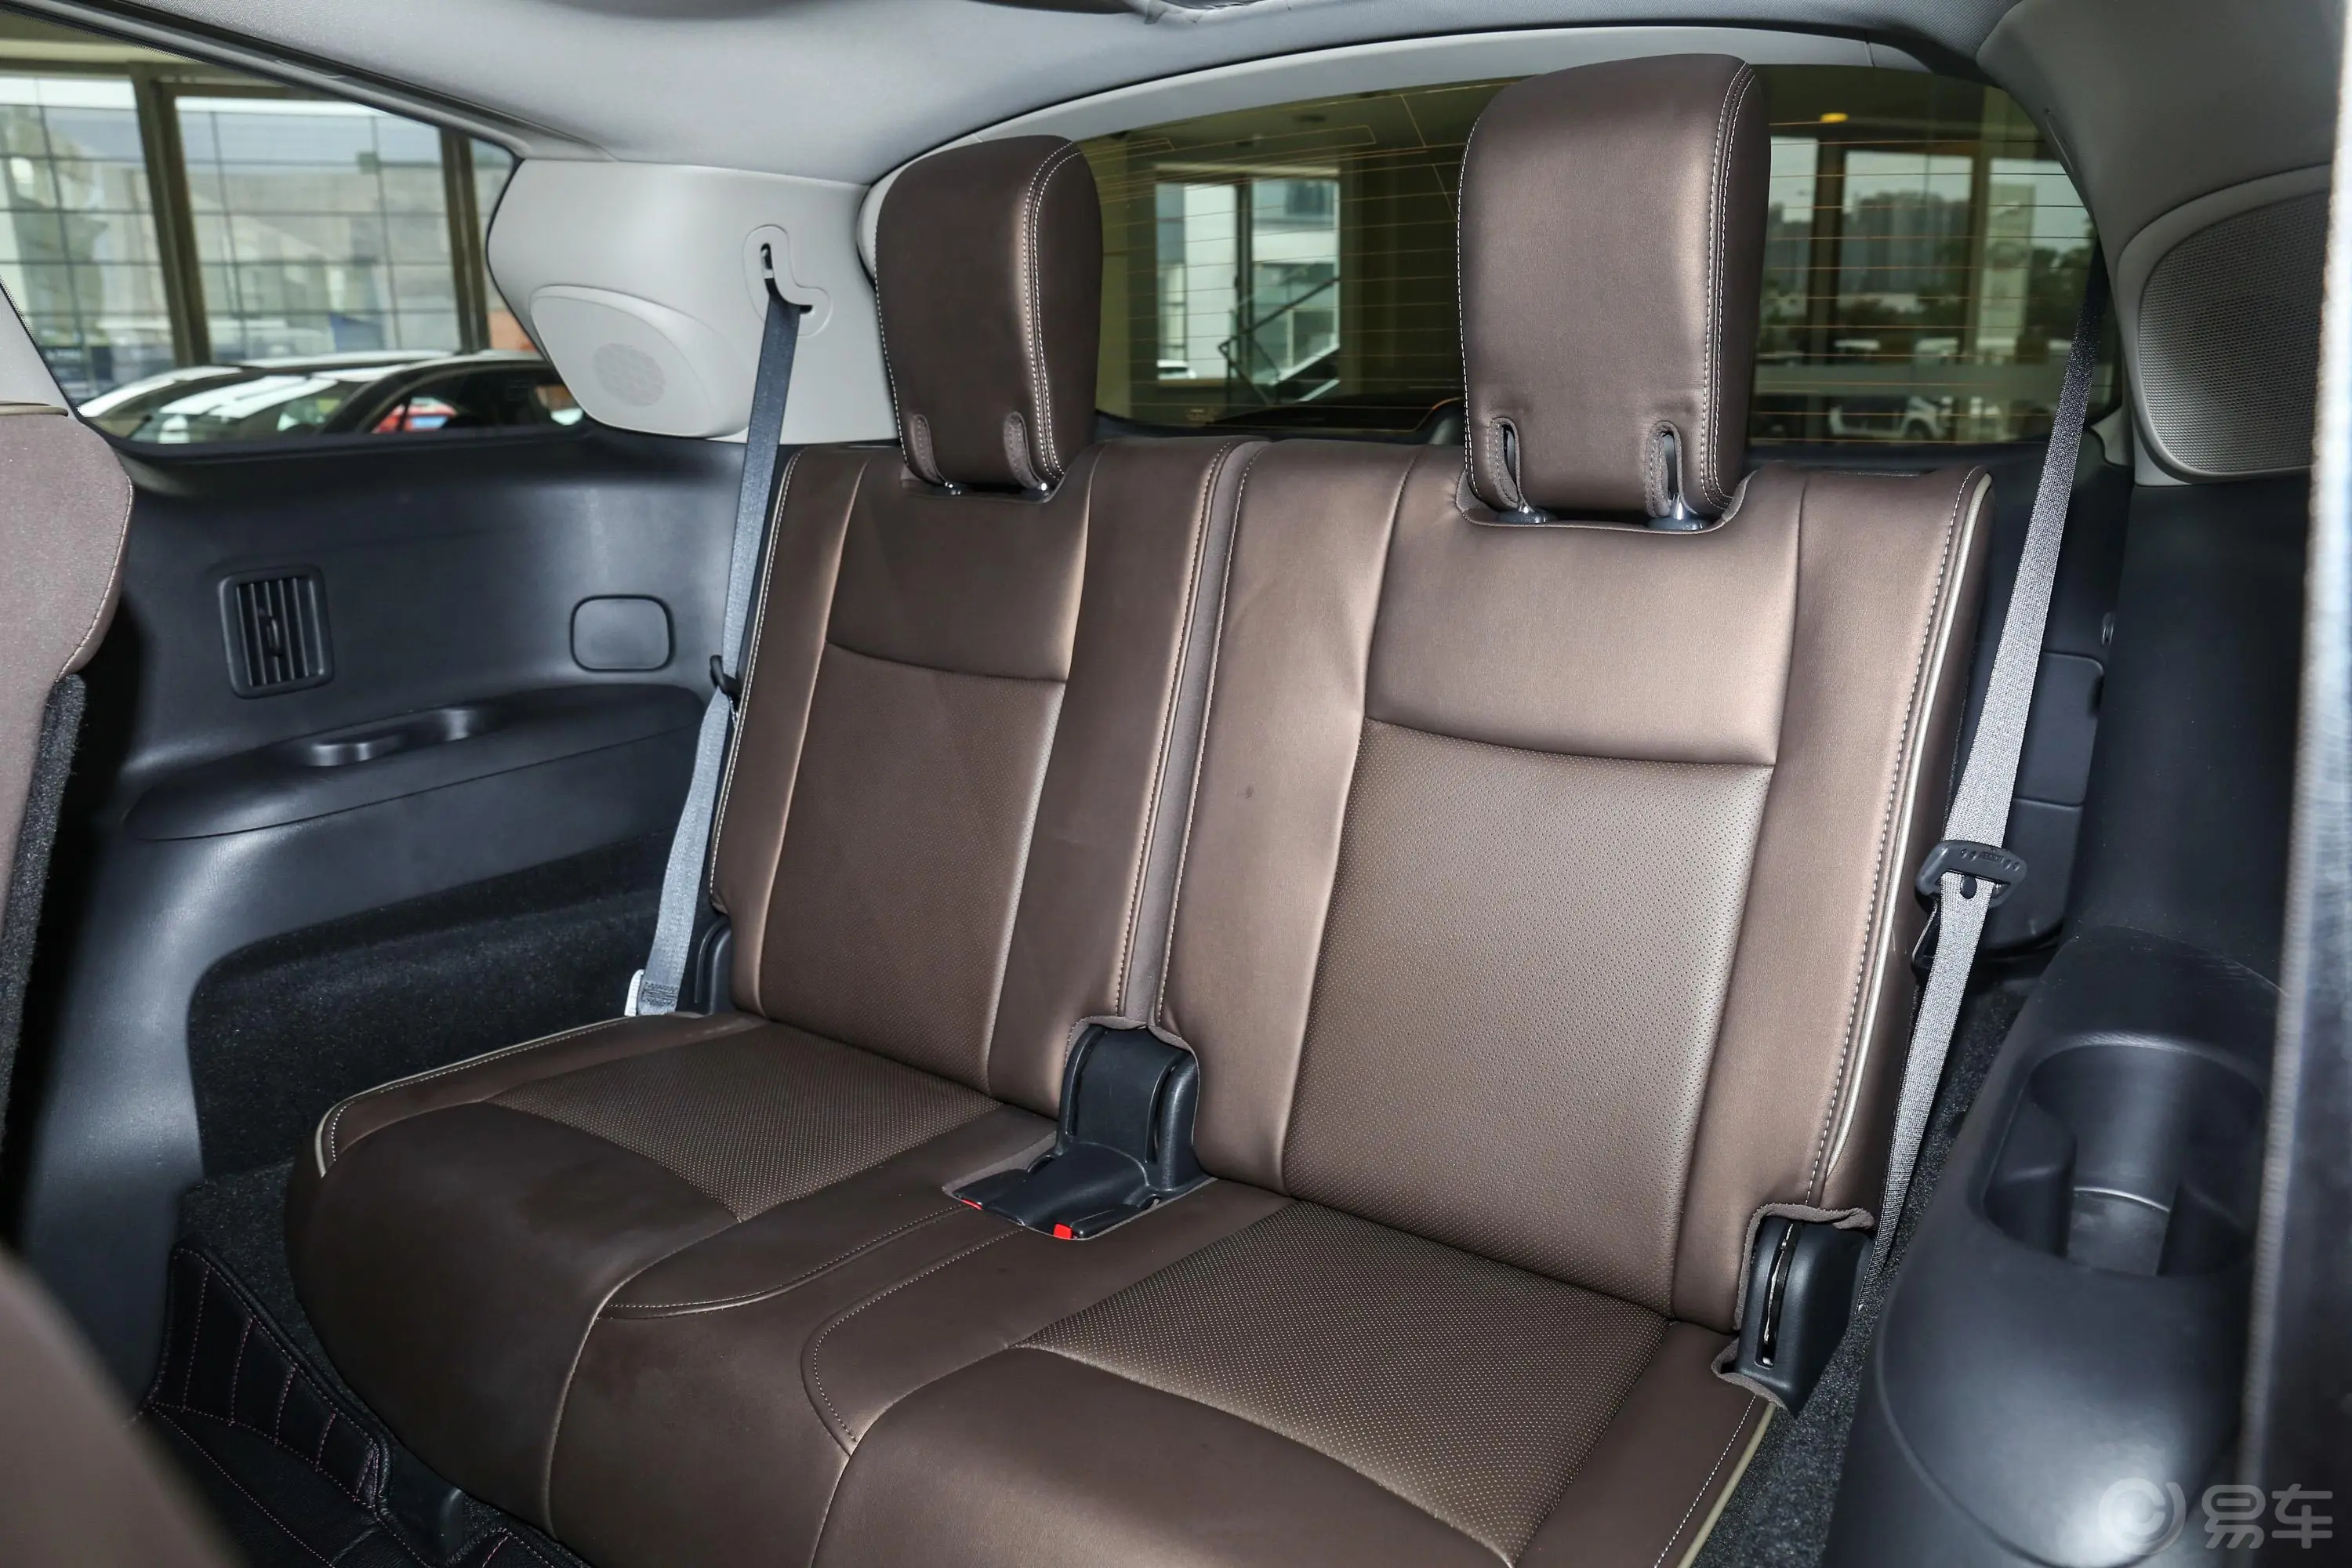 英菲尼迪QX60(进口)2.5 S/C Hybrid 四驱 全能版第三排座椅